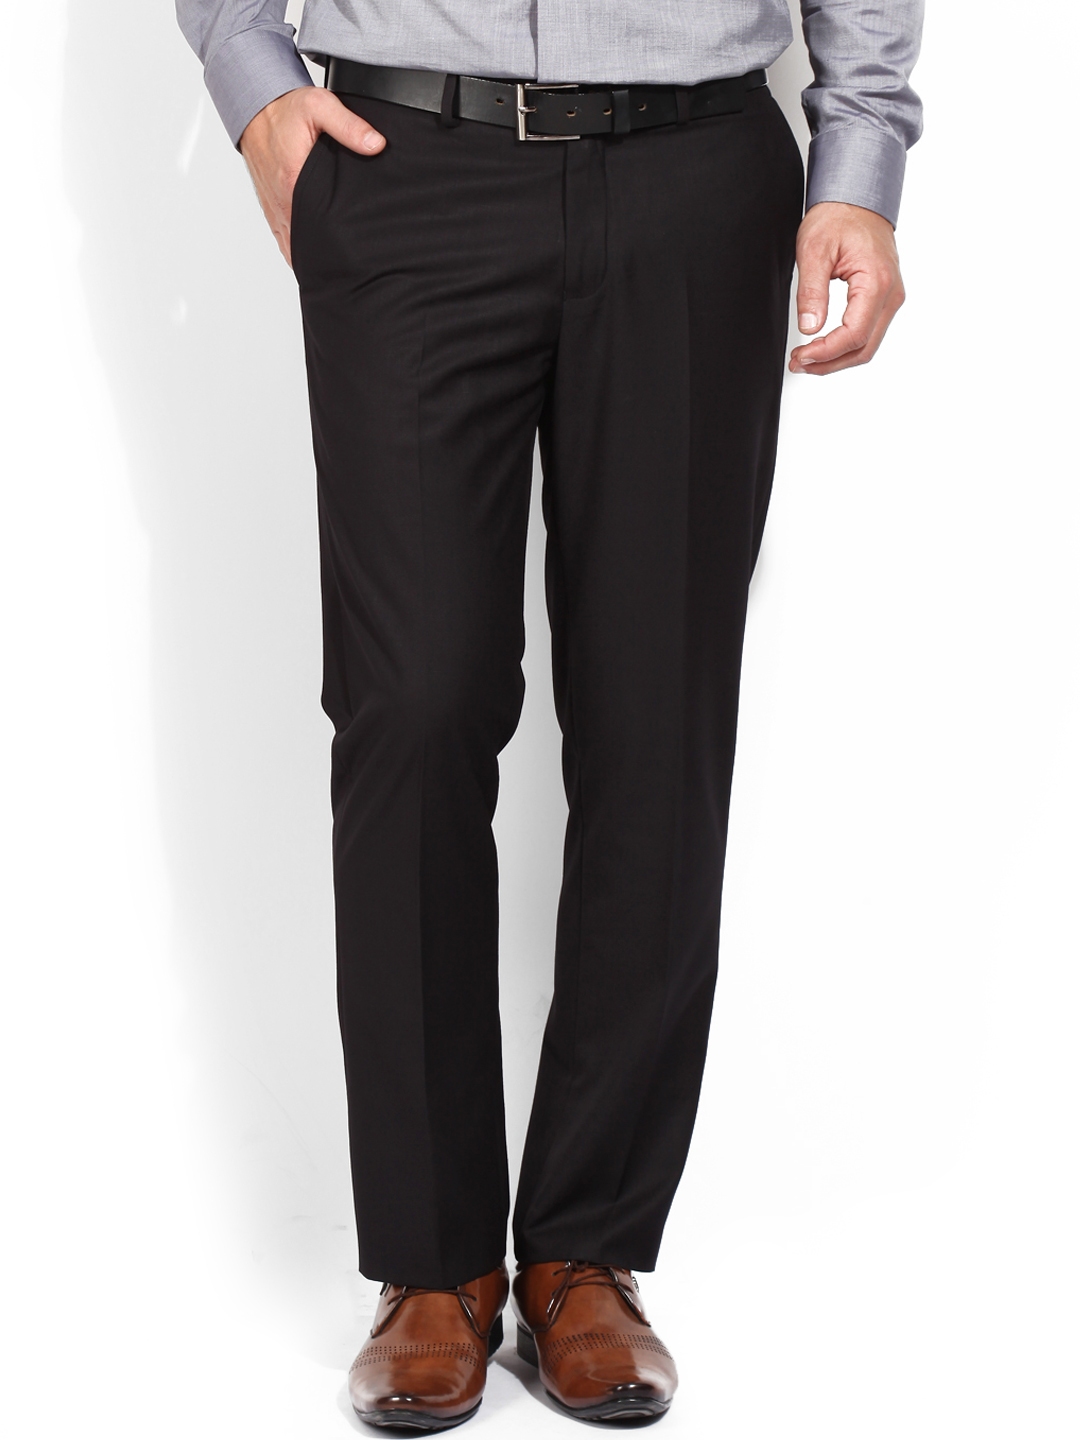 Buy Blackberrys Black Formal Trousers - Trousers for Men 1323380 | Myntra